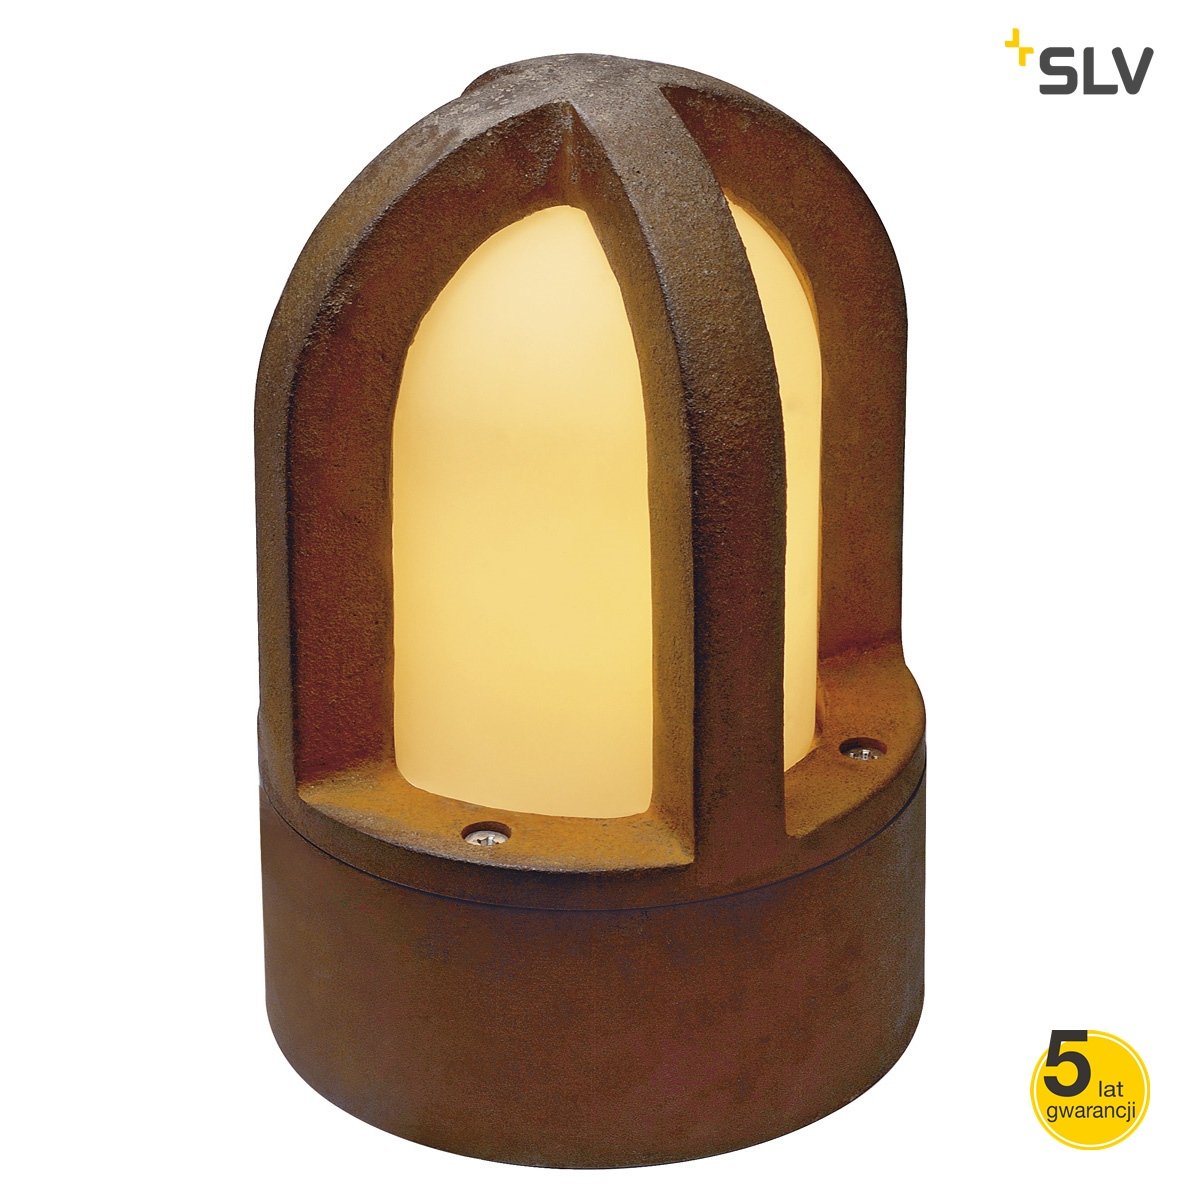 SLV by Spotline Lampa stojąca - Rusty Cone 229430 229430